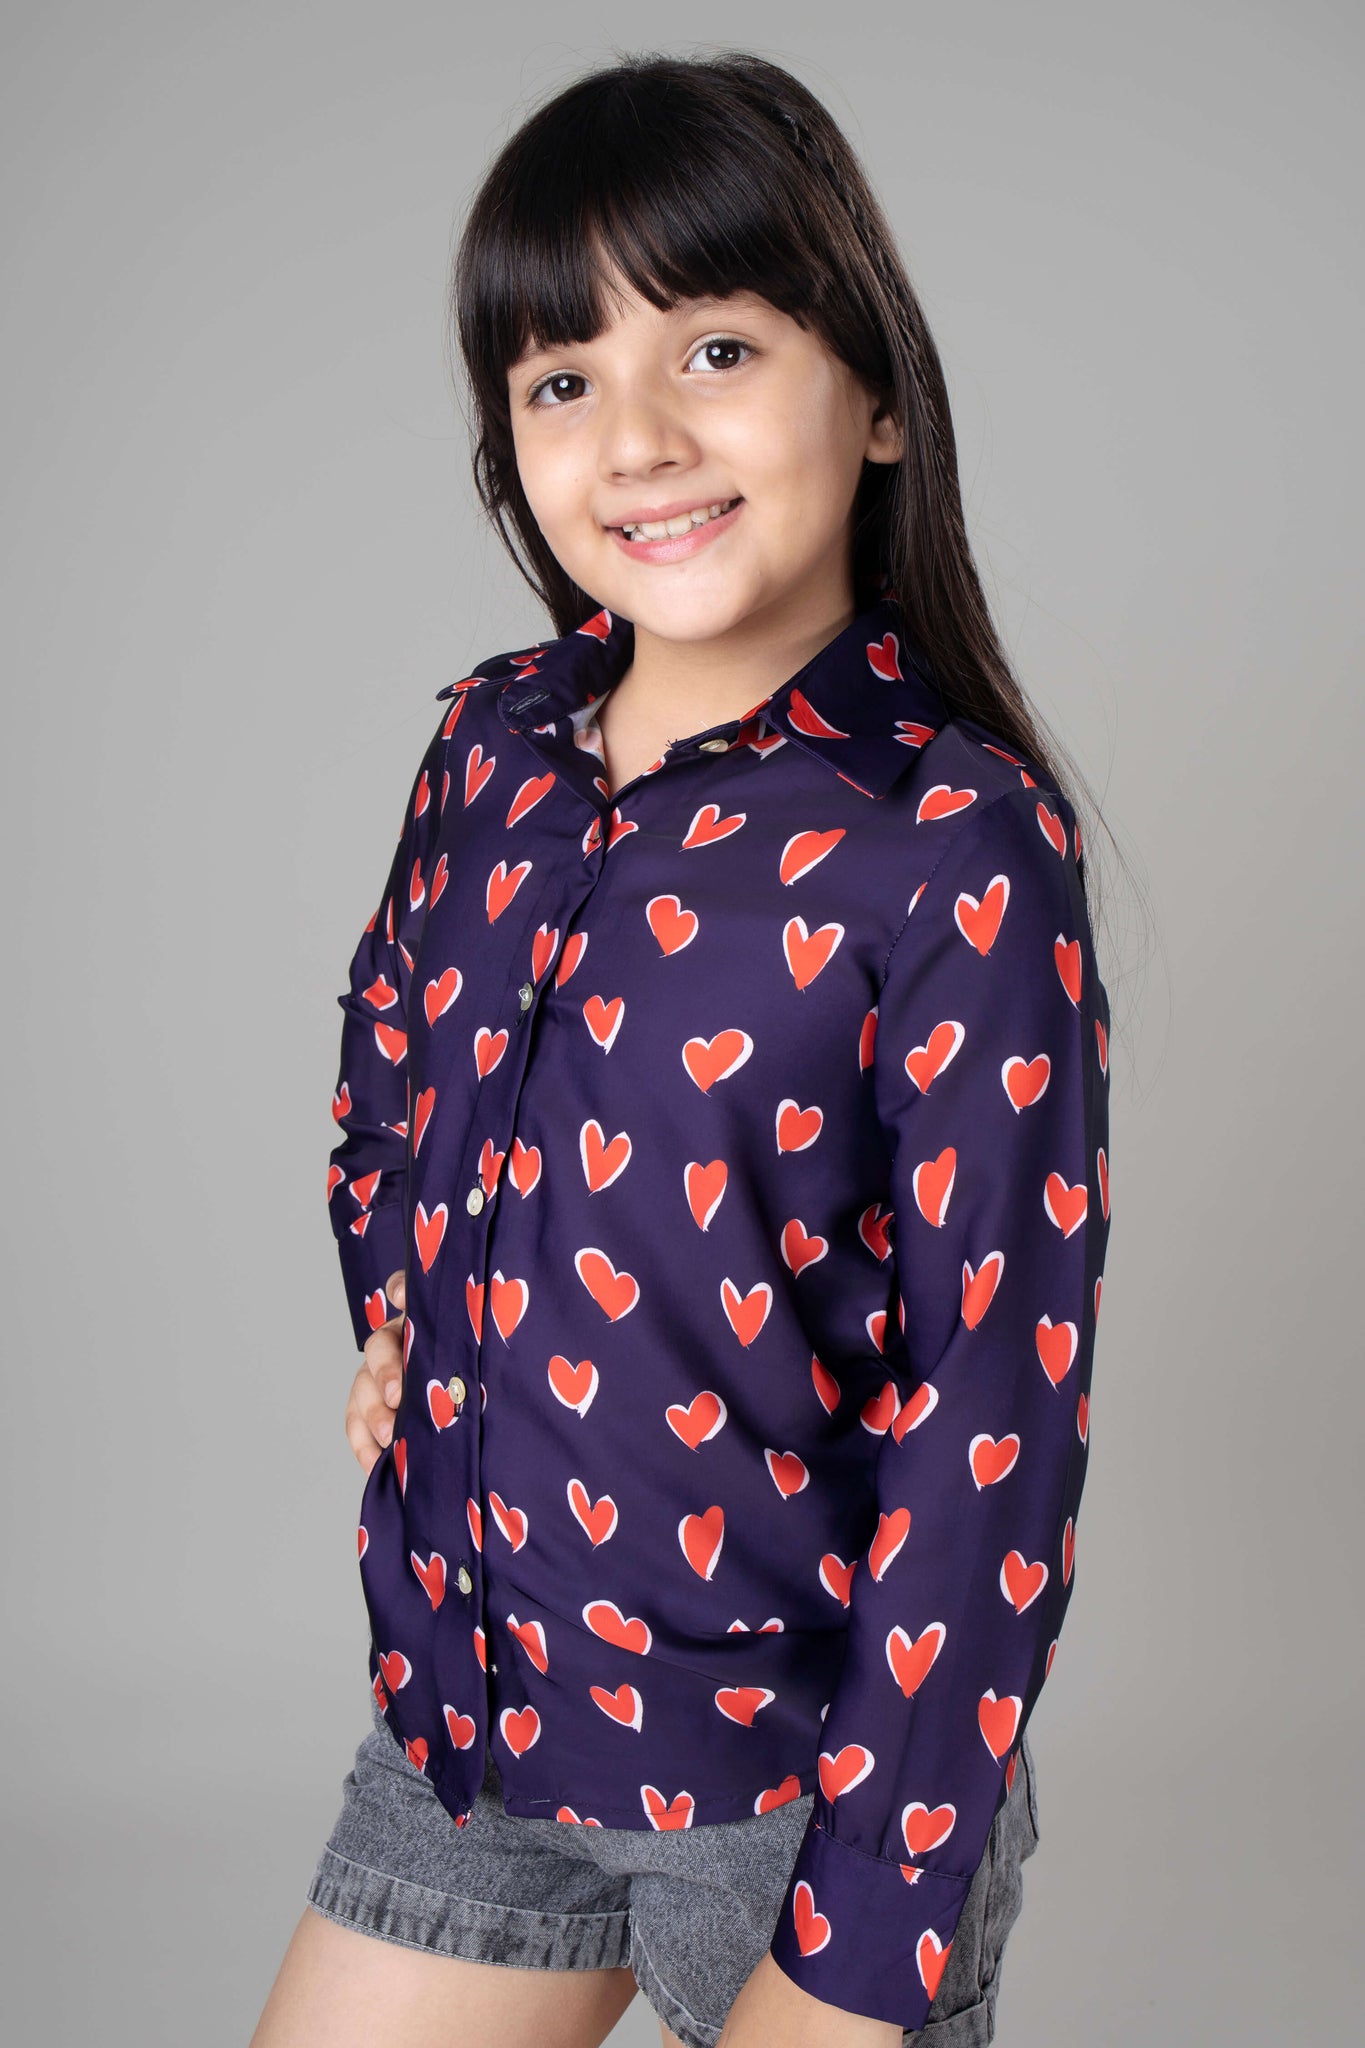 Trendy Heart Shirt For Girls